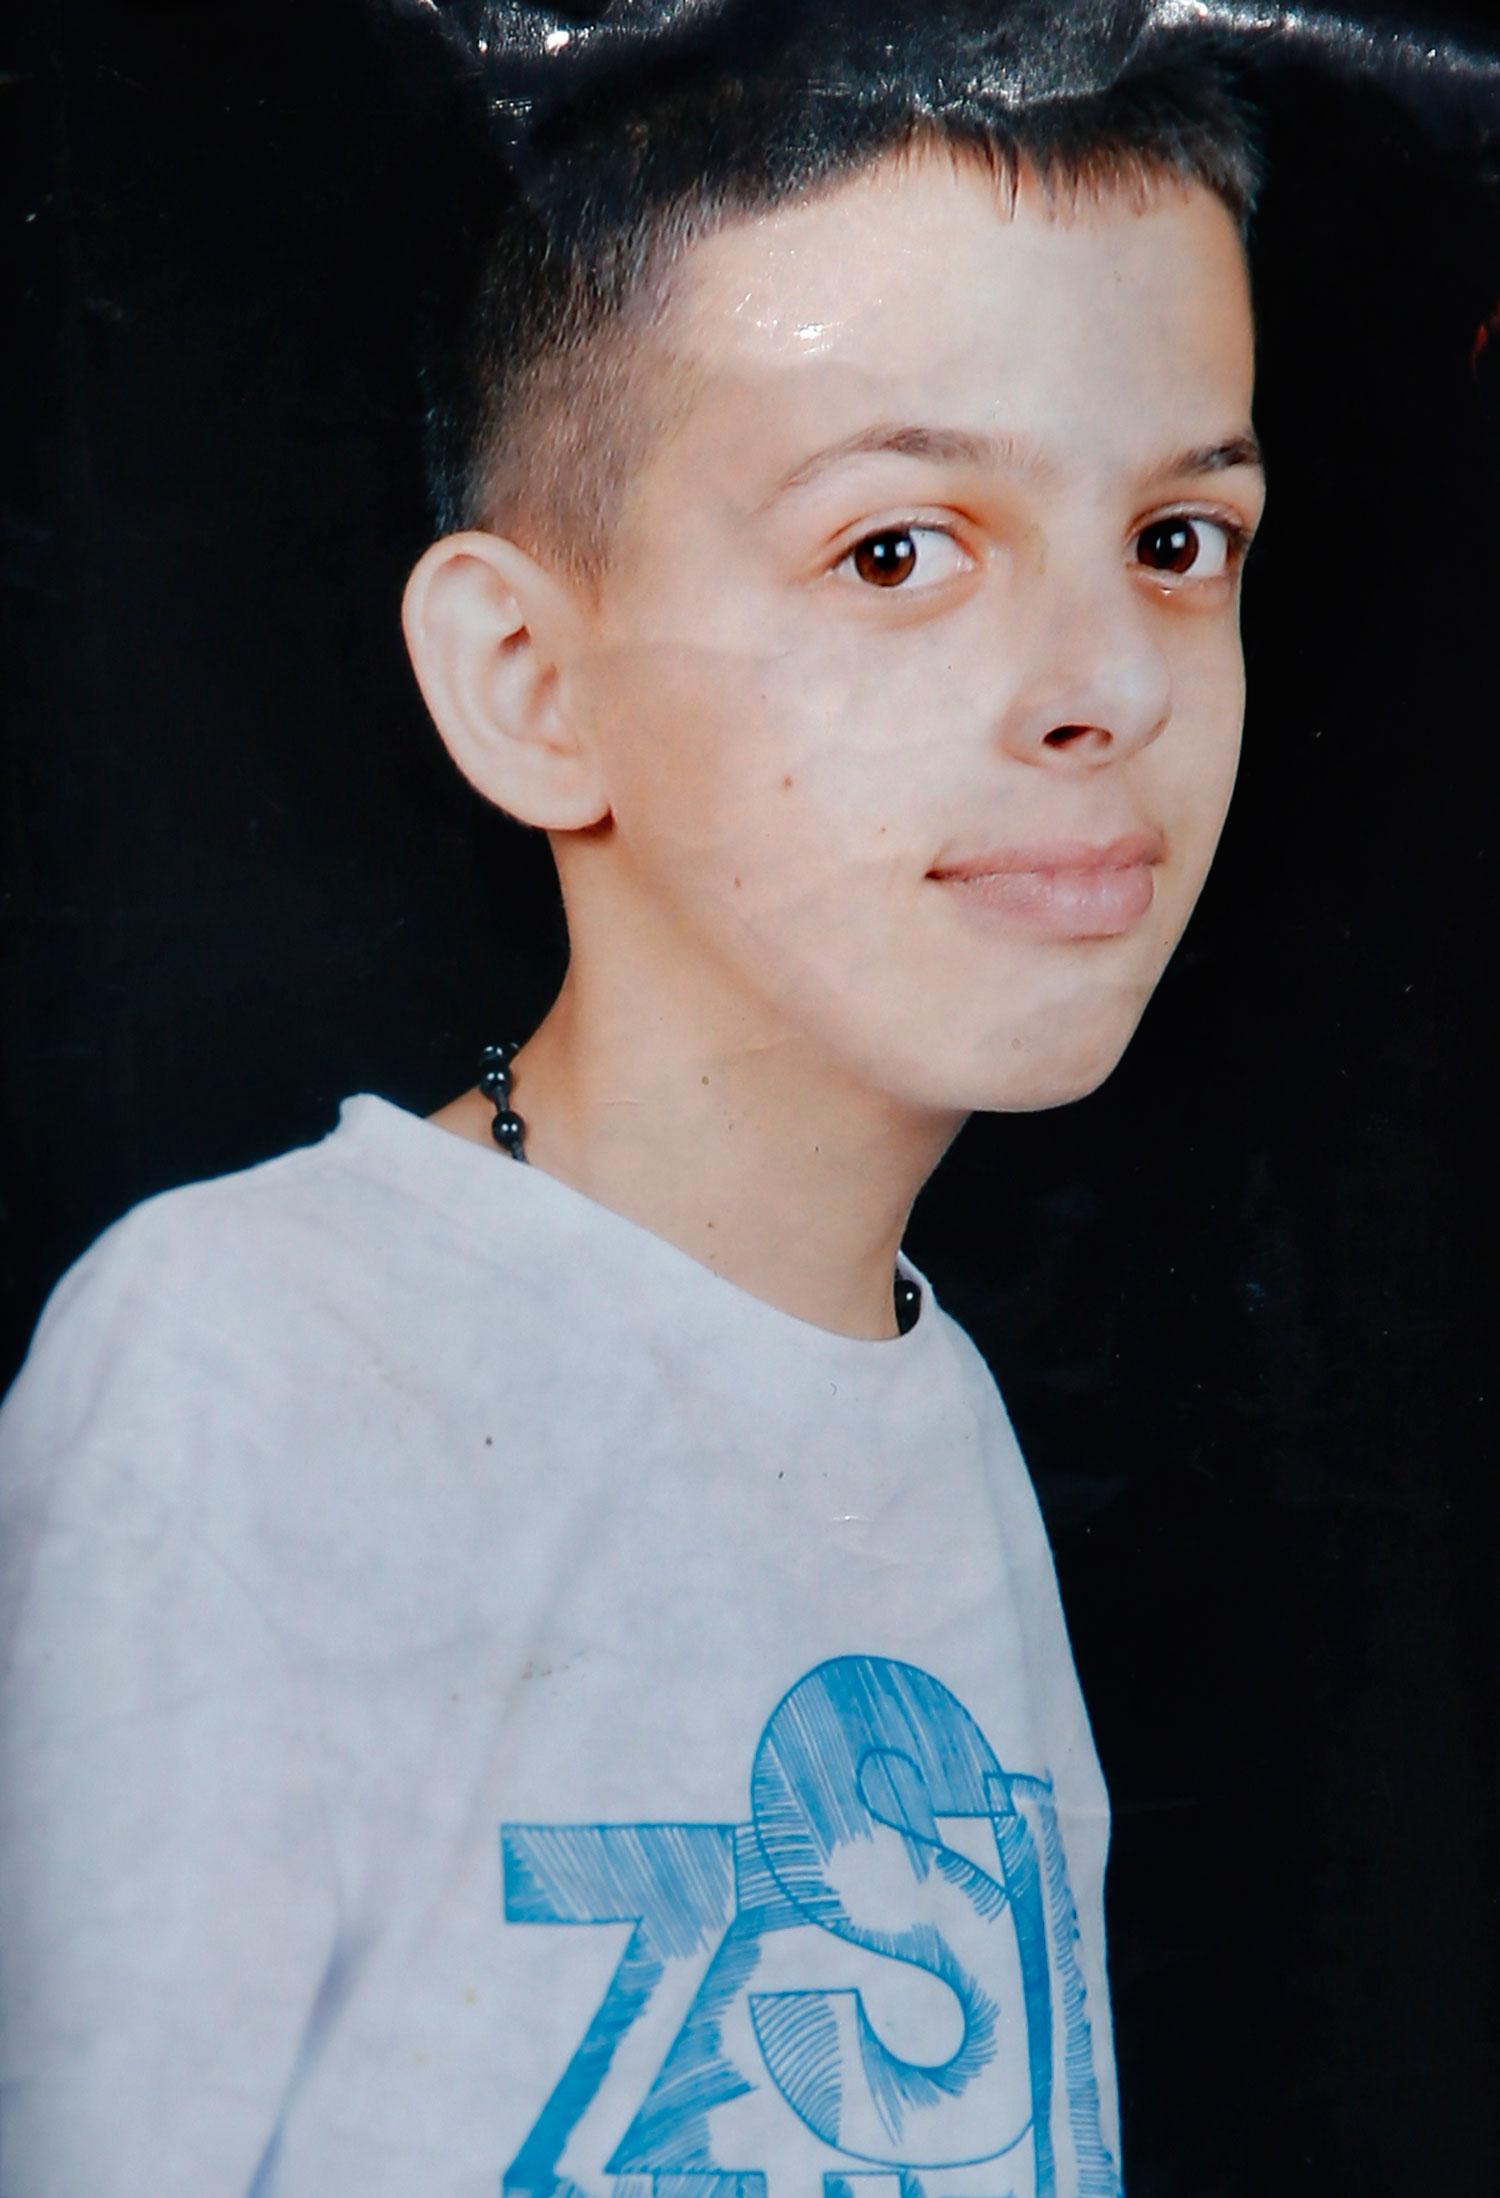 Mohammed Abu Khder, en palestinsk tonåring, hittades mördad i ett skogsparti utanför Jerusalem. Mordet misstänks vara en hämnd efter att tre israeliska tonåringar kidnappats och mördats tidigare i år.